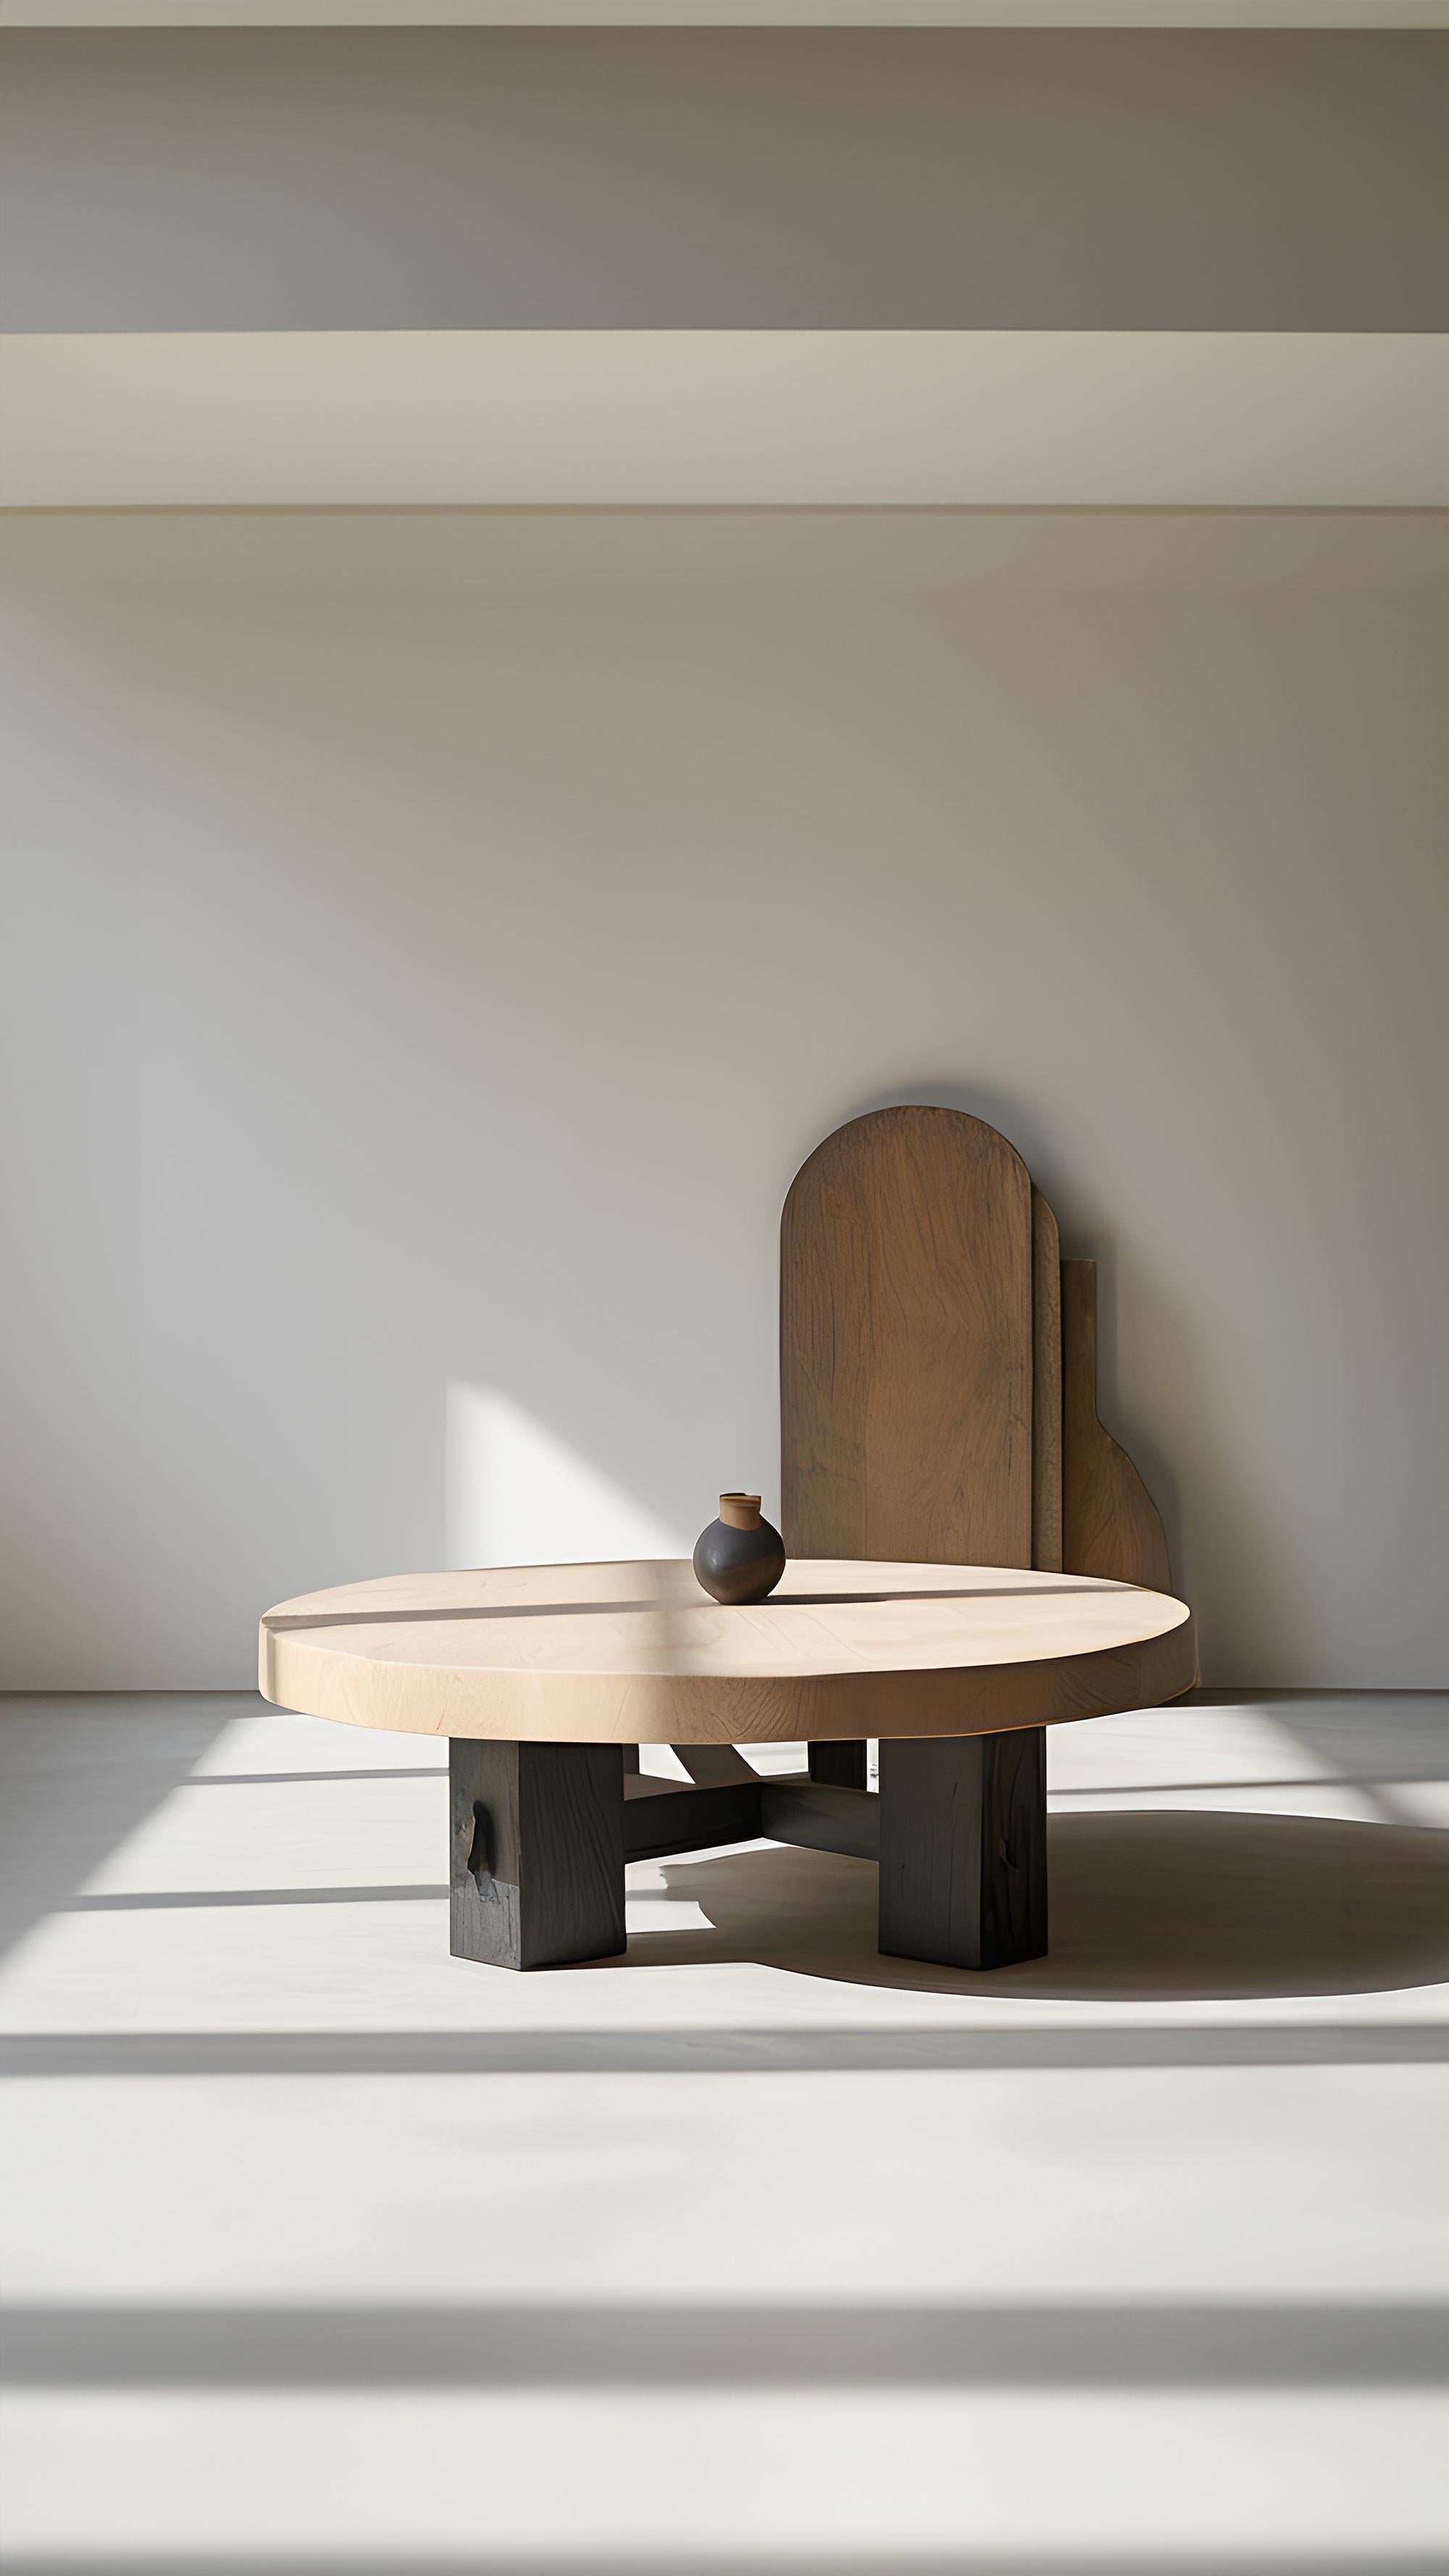 Contemporary Cuatri-Leg Round Coffee Table - Harmonic Fundamenta 37 by NONO For Sale